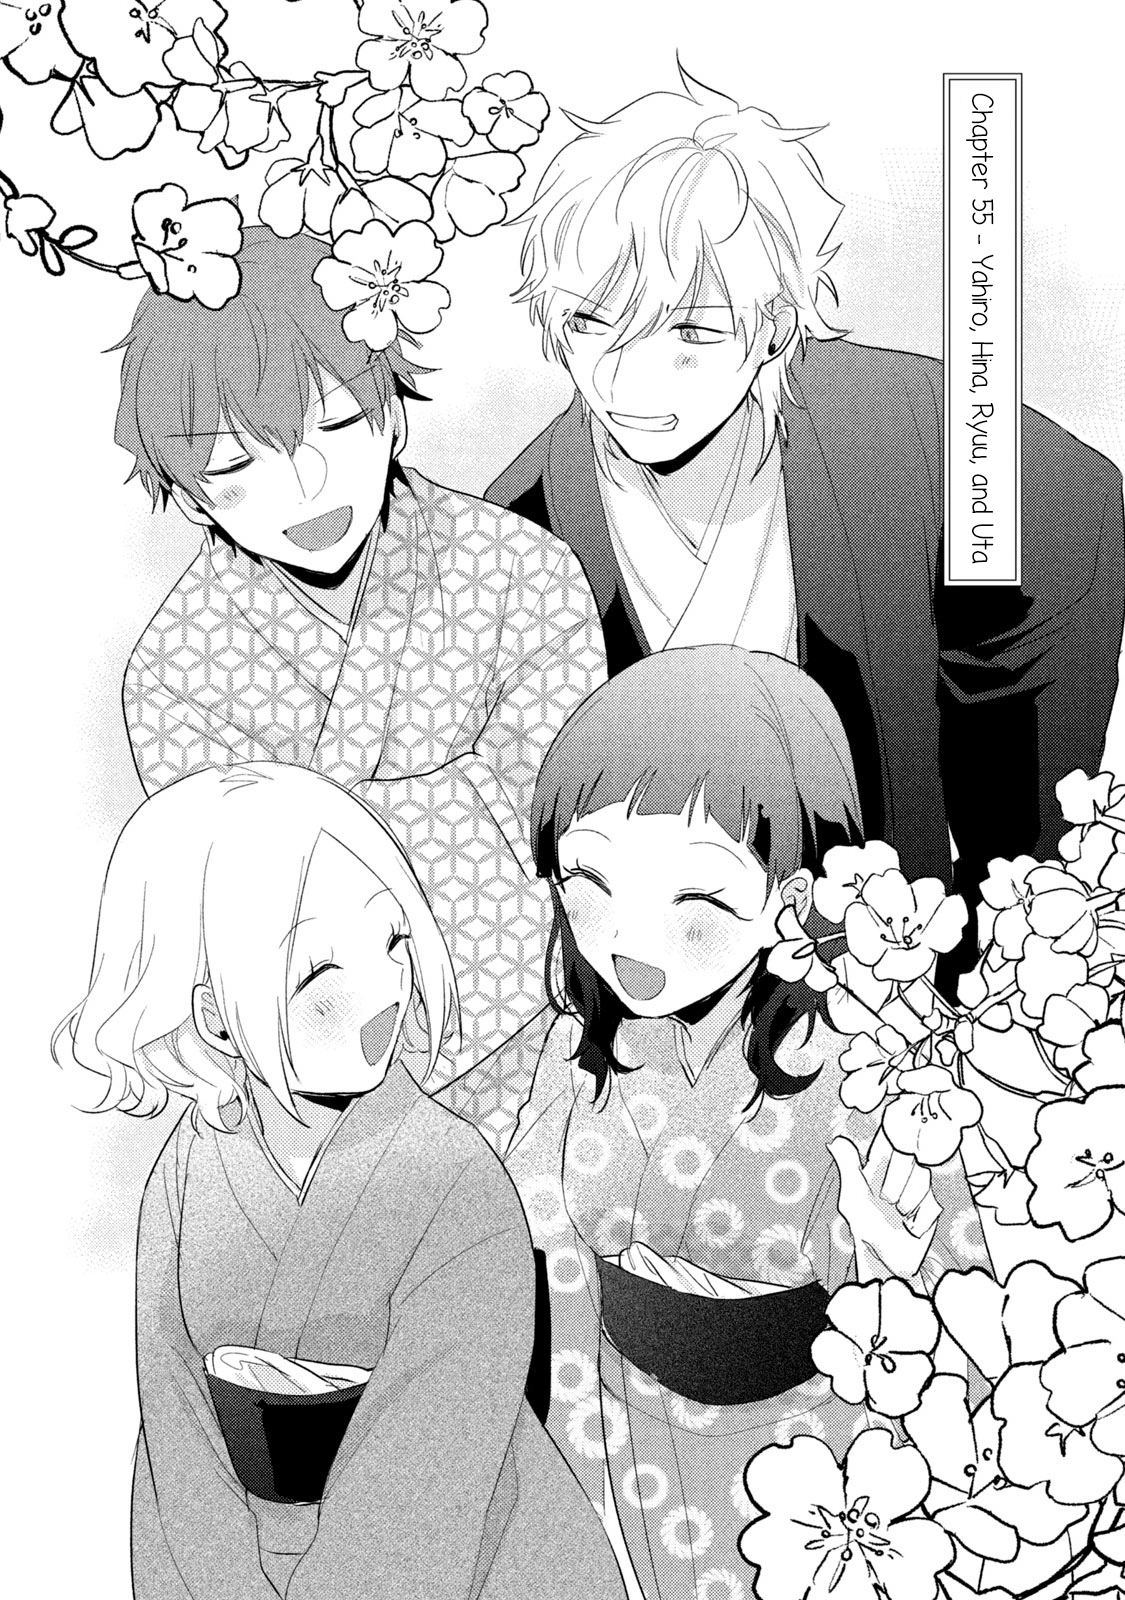 Zense Coupling Vol.7 Chapter 55: Yahiro, Hina, Ryuu, And Uta - Picture 2